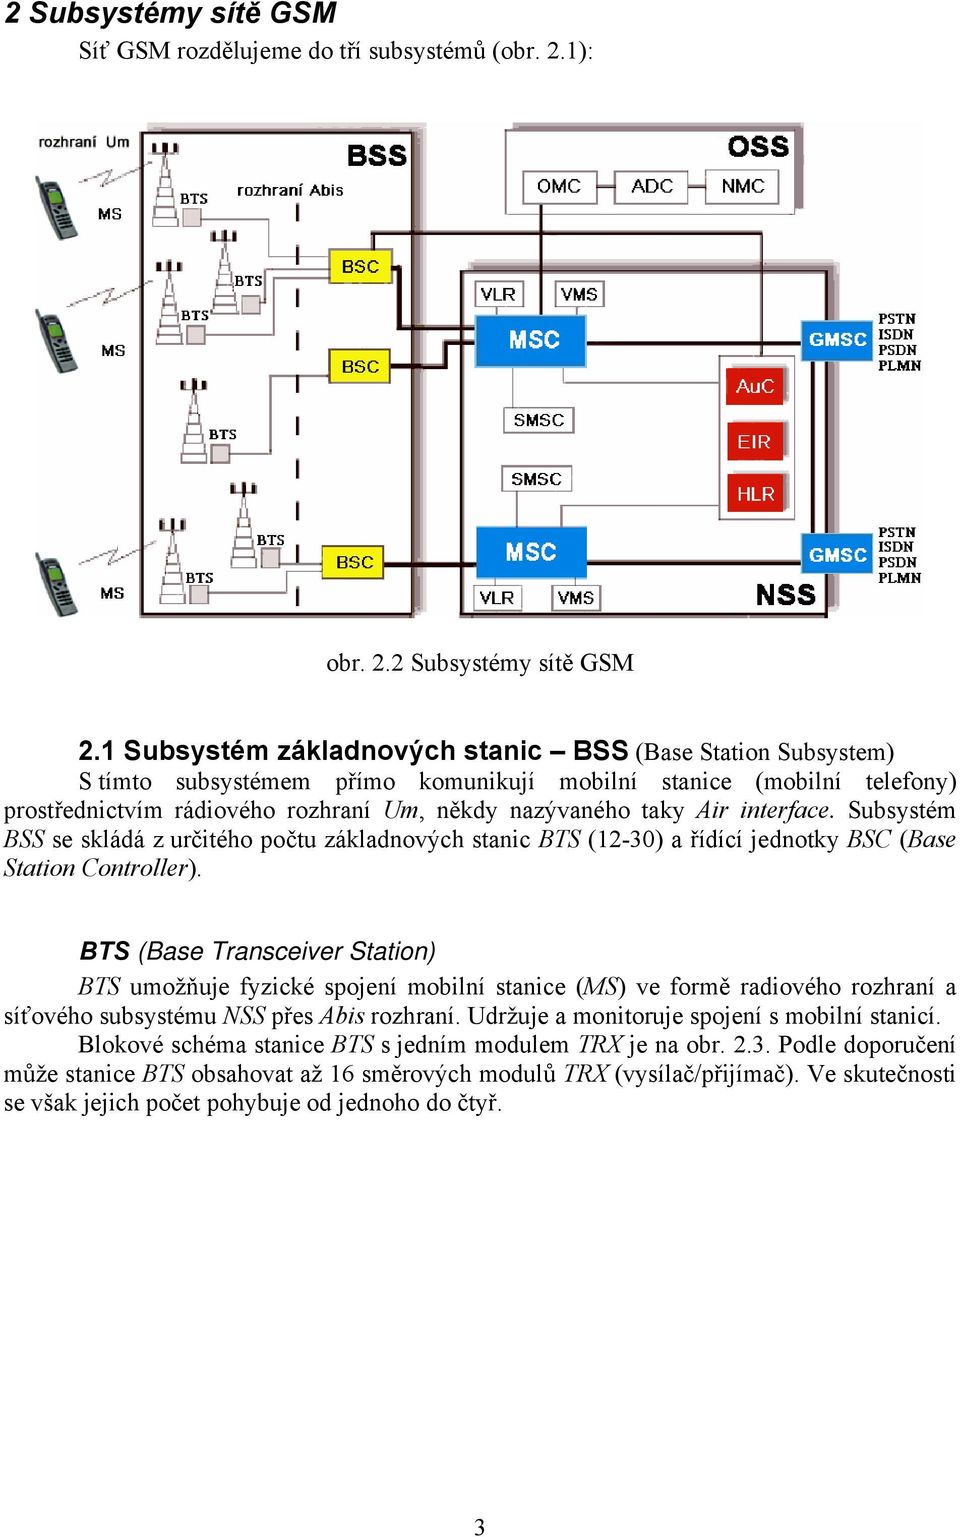 interface. Subsystém BSS se skládá z určitého počtu základnových stanic BTS (12-30) a řídící jednotky BSC (Base Station Controller).